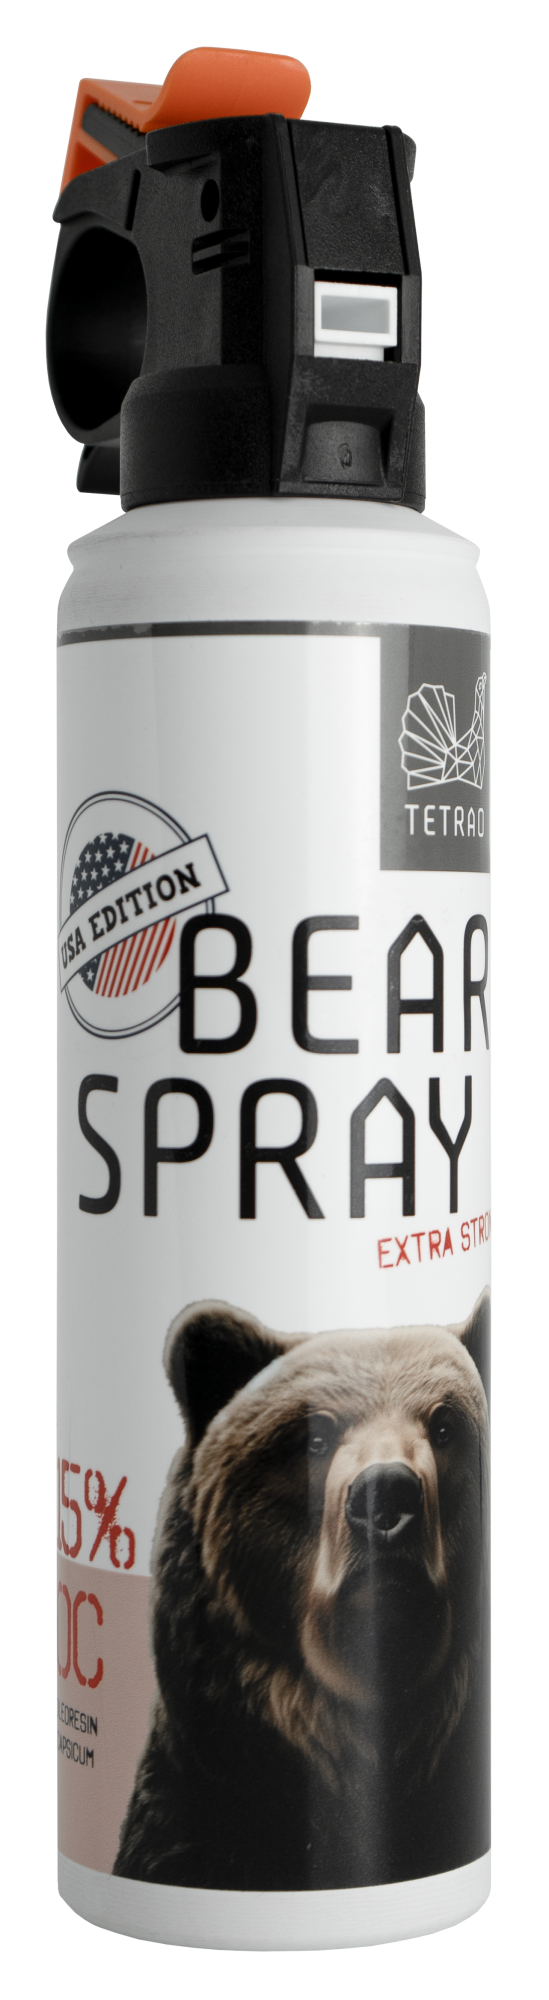 Obranný sprej proti medveďom TETRAO Bear Spray USA edition 150 ml  